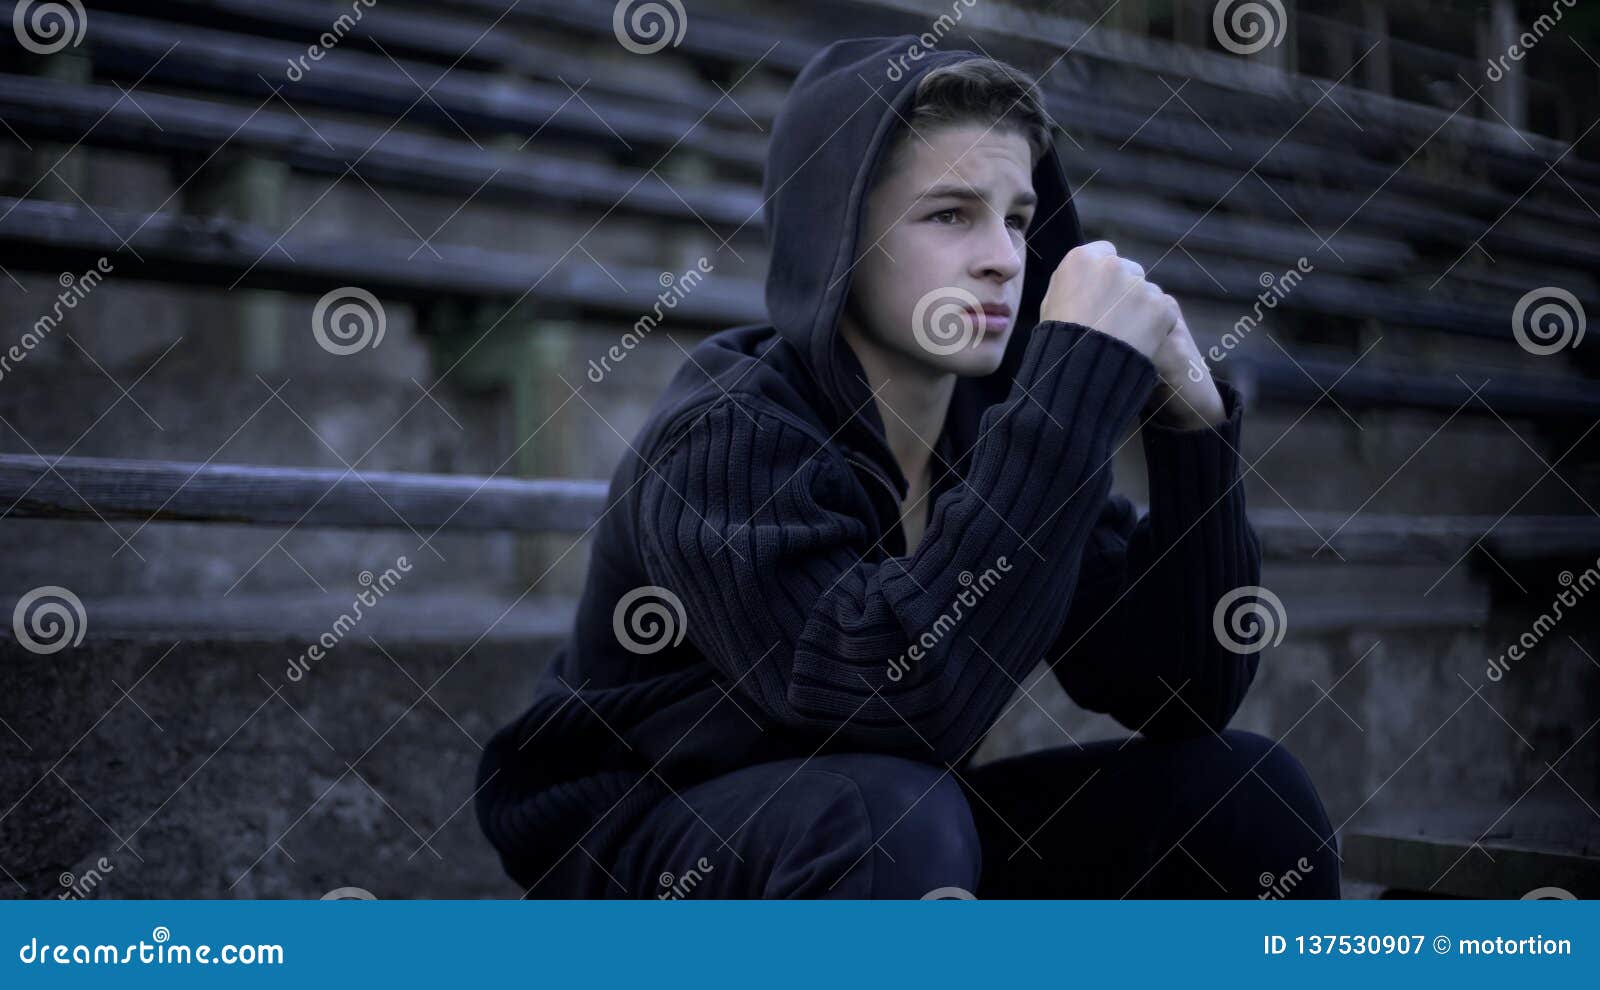 upset boy feels depression, sitting on stadium tribune, loneliness and sorrow